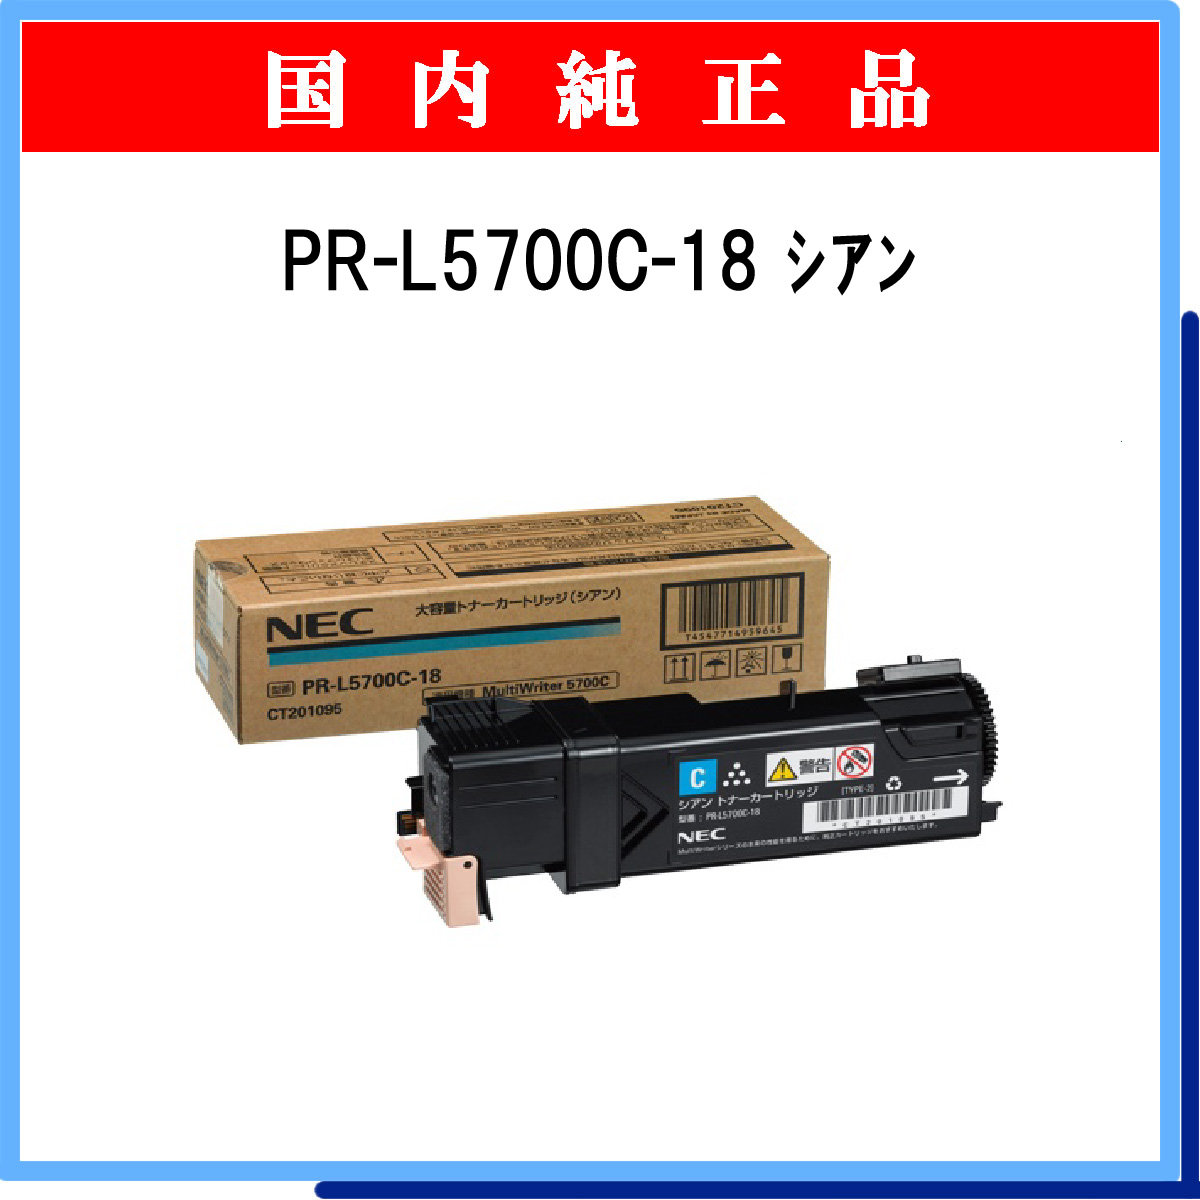 PR-L5700C-18 (大容量) 純正